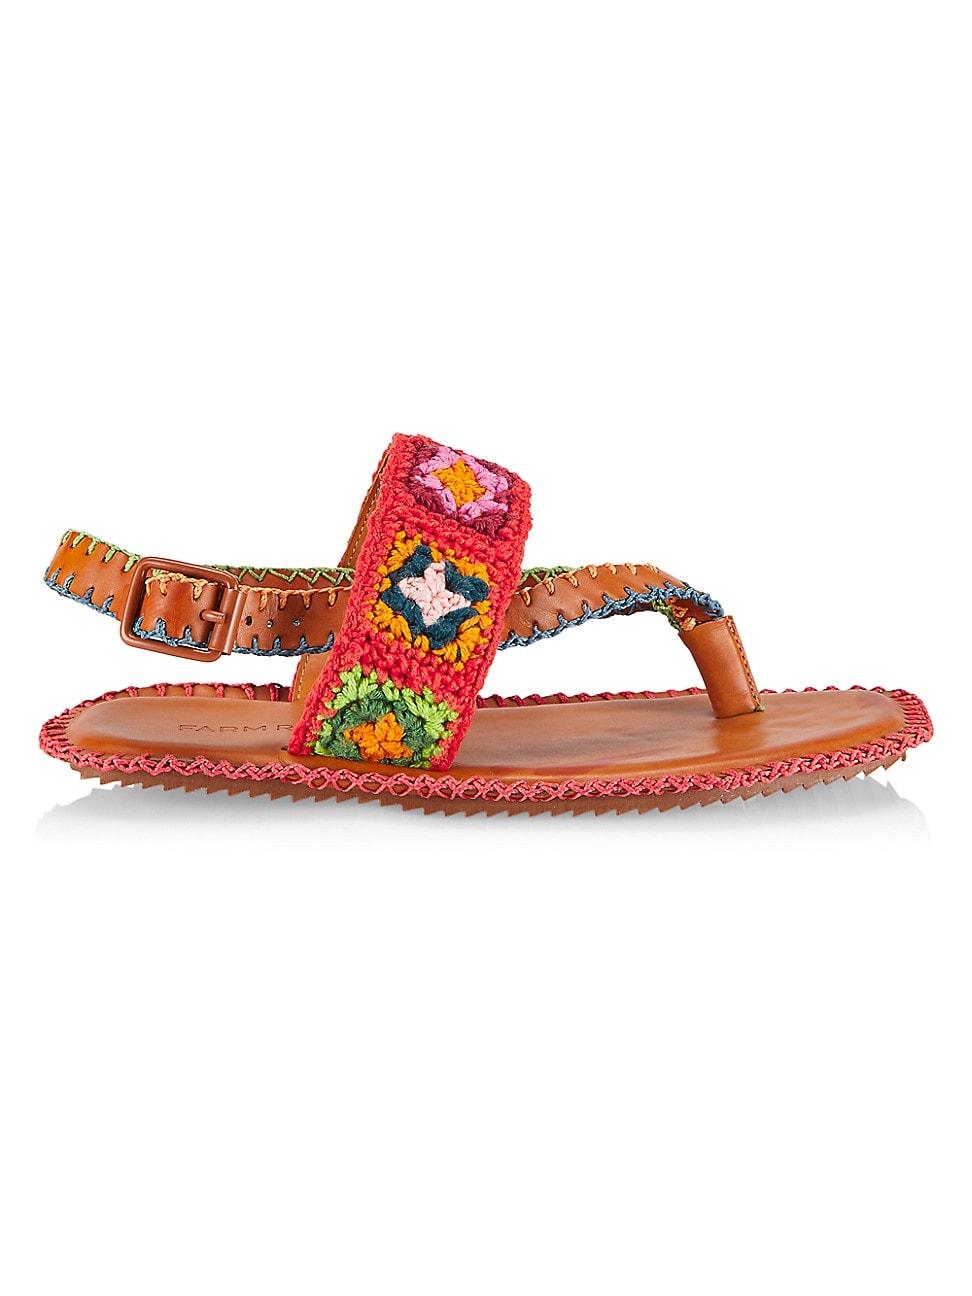 FARM Rio Caramel Granny Square Crochet Sandals in Red | Lyst